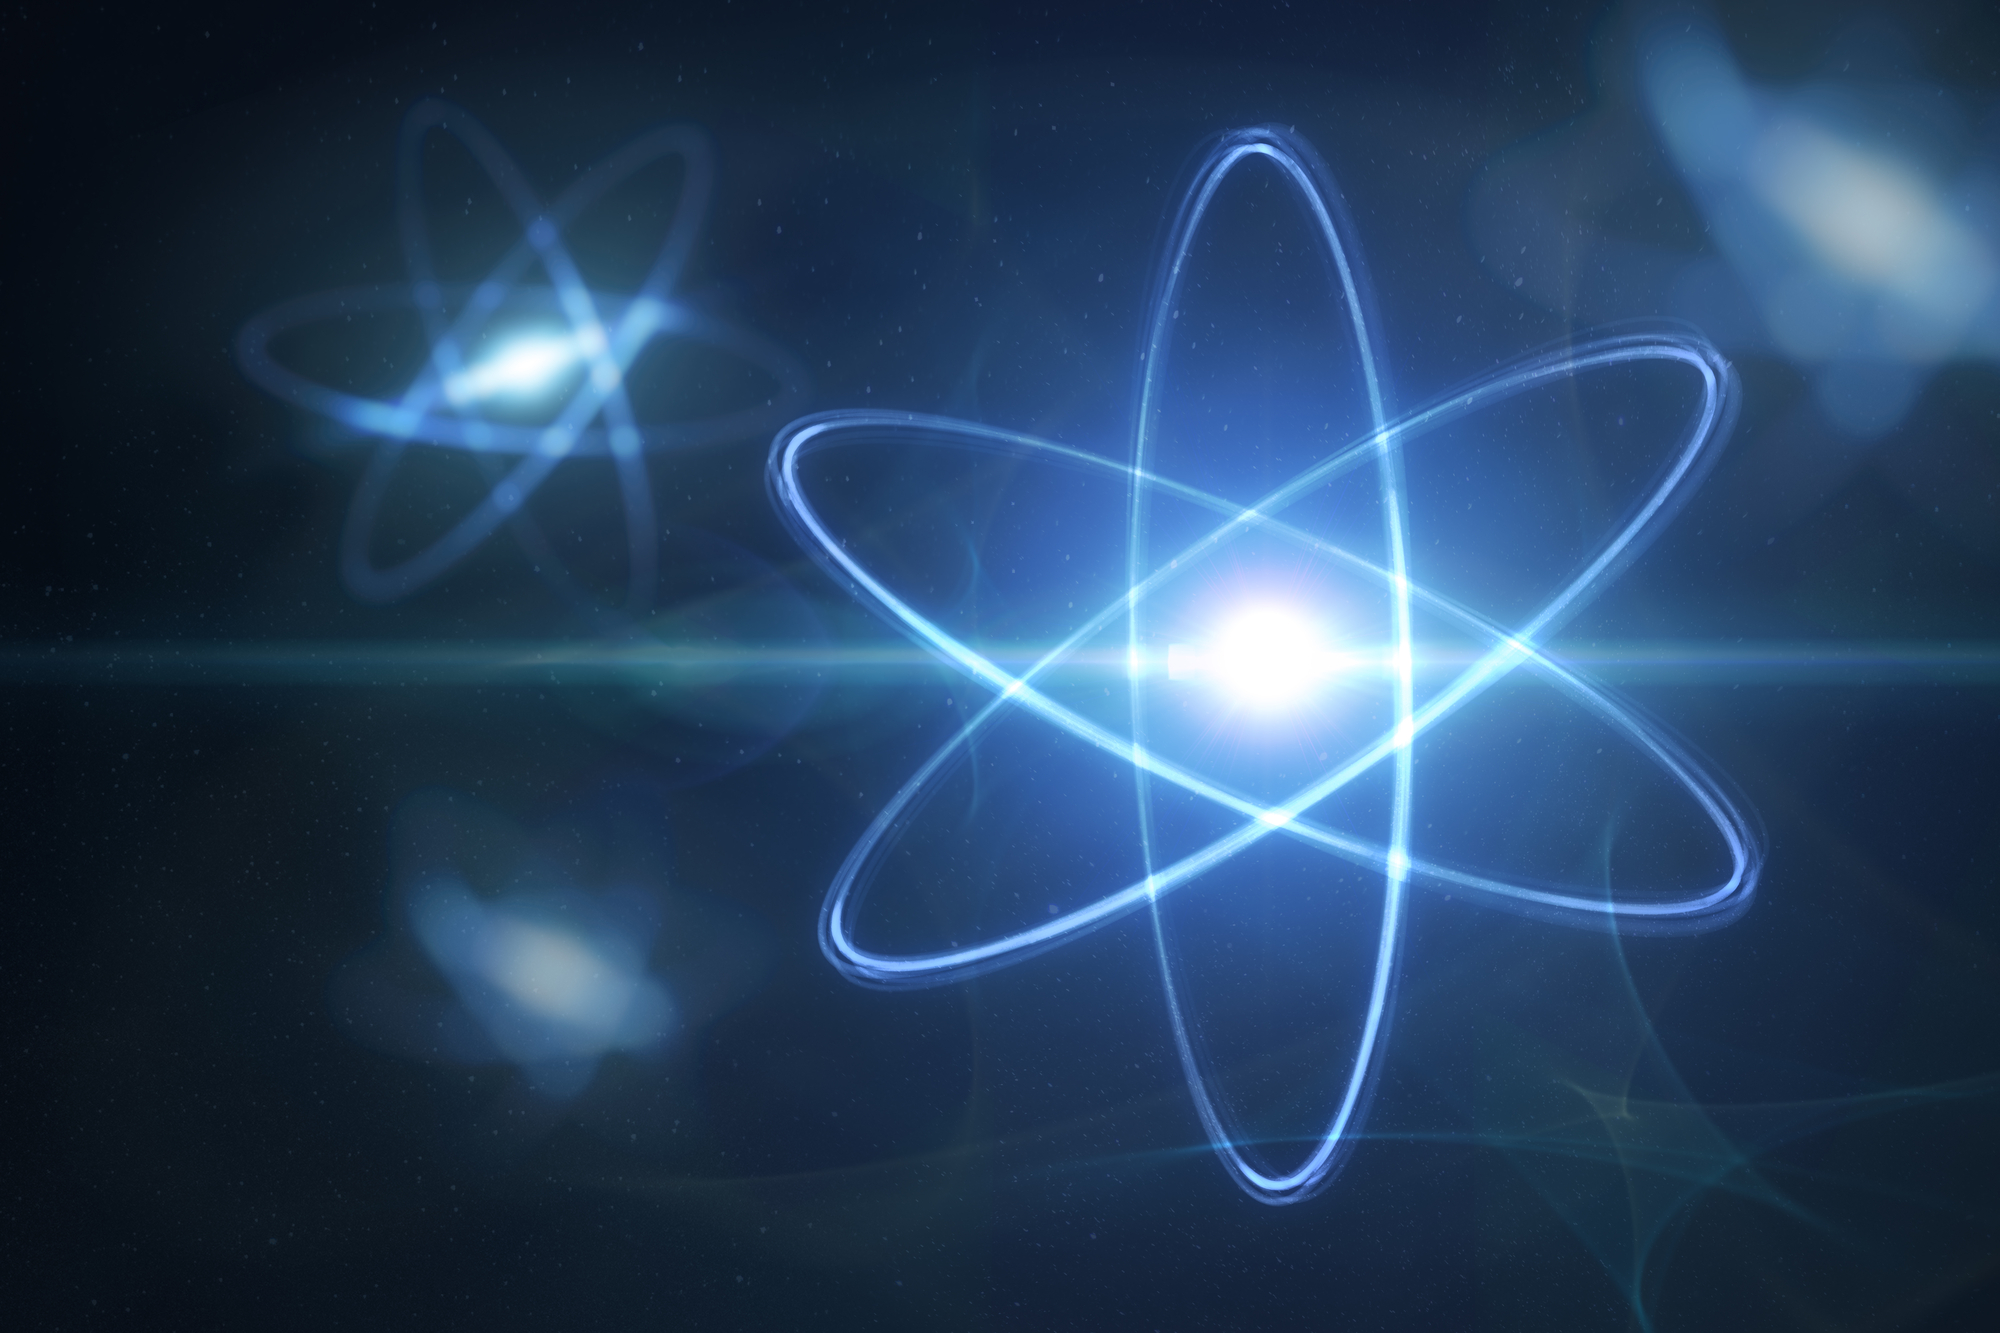 Prikaz ilustracije atoma i elementarnih čestica. Izvor: Depositphotos